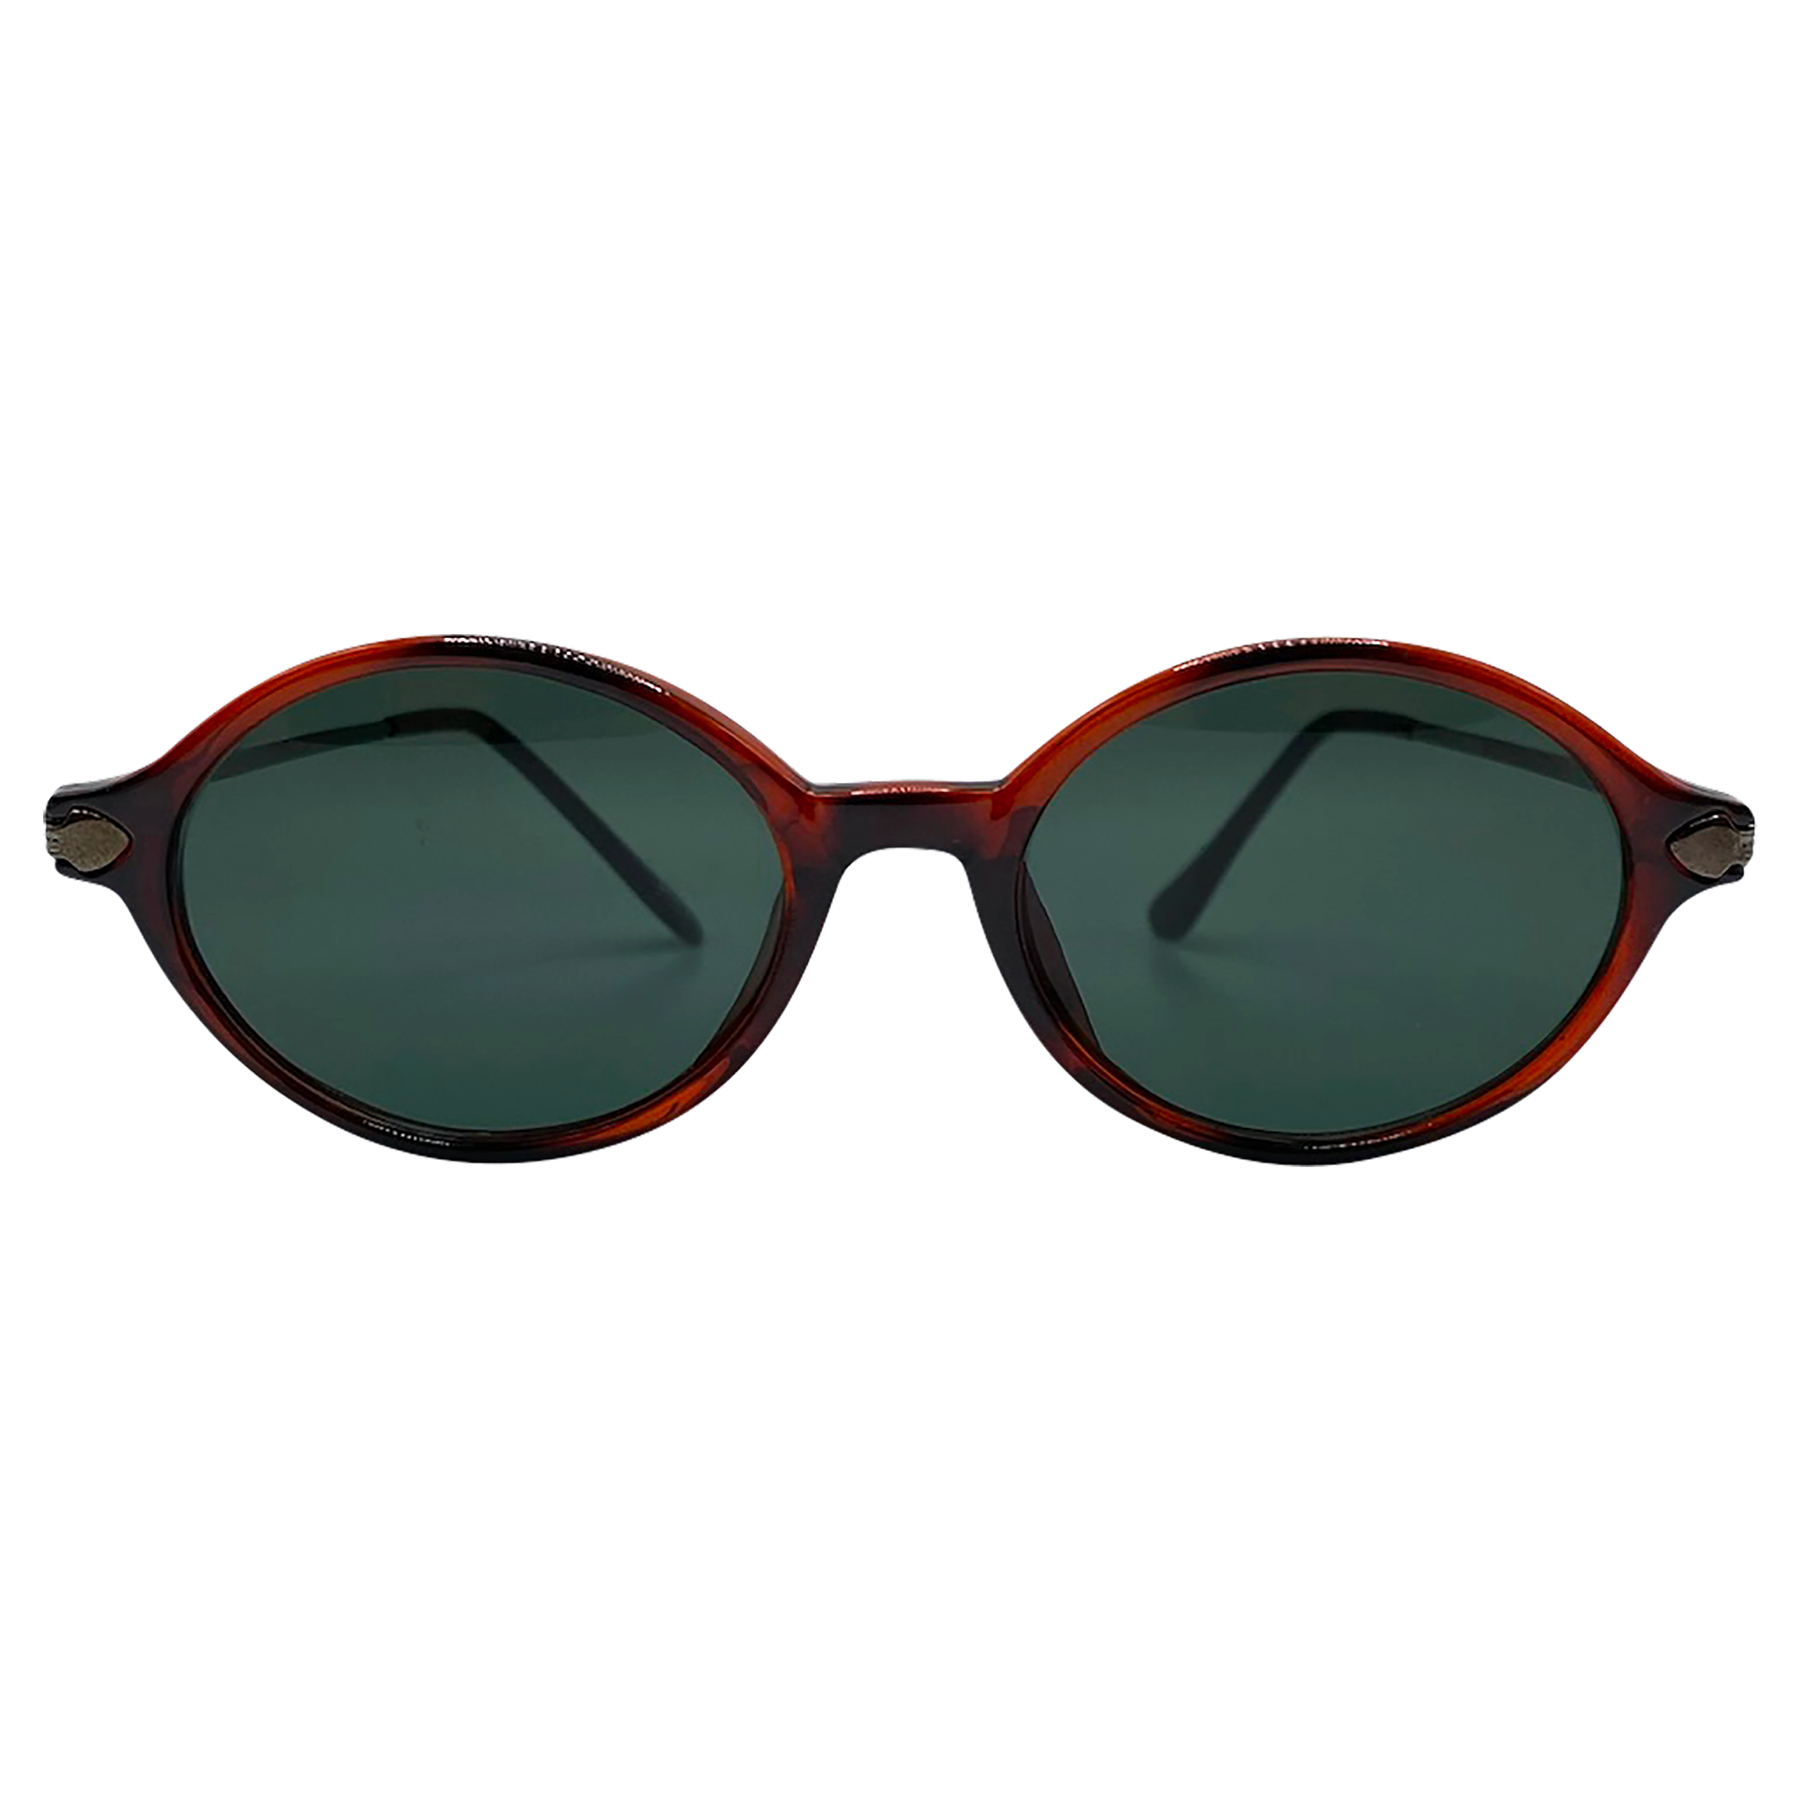 BEAN Tortoise/Gunmetal Oval Sunglasses